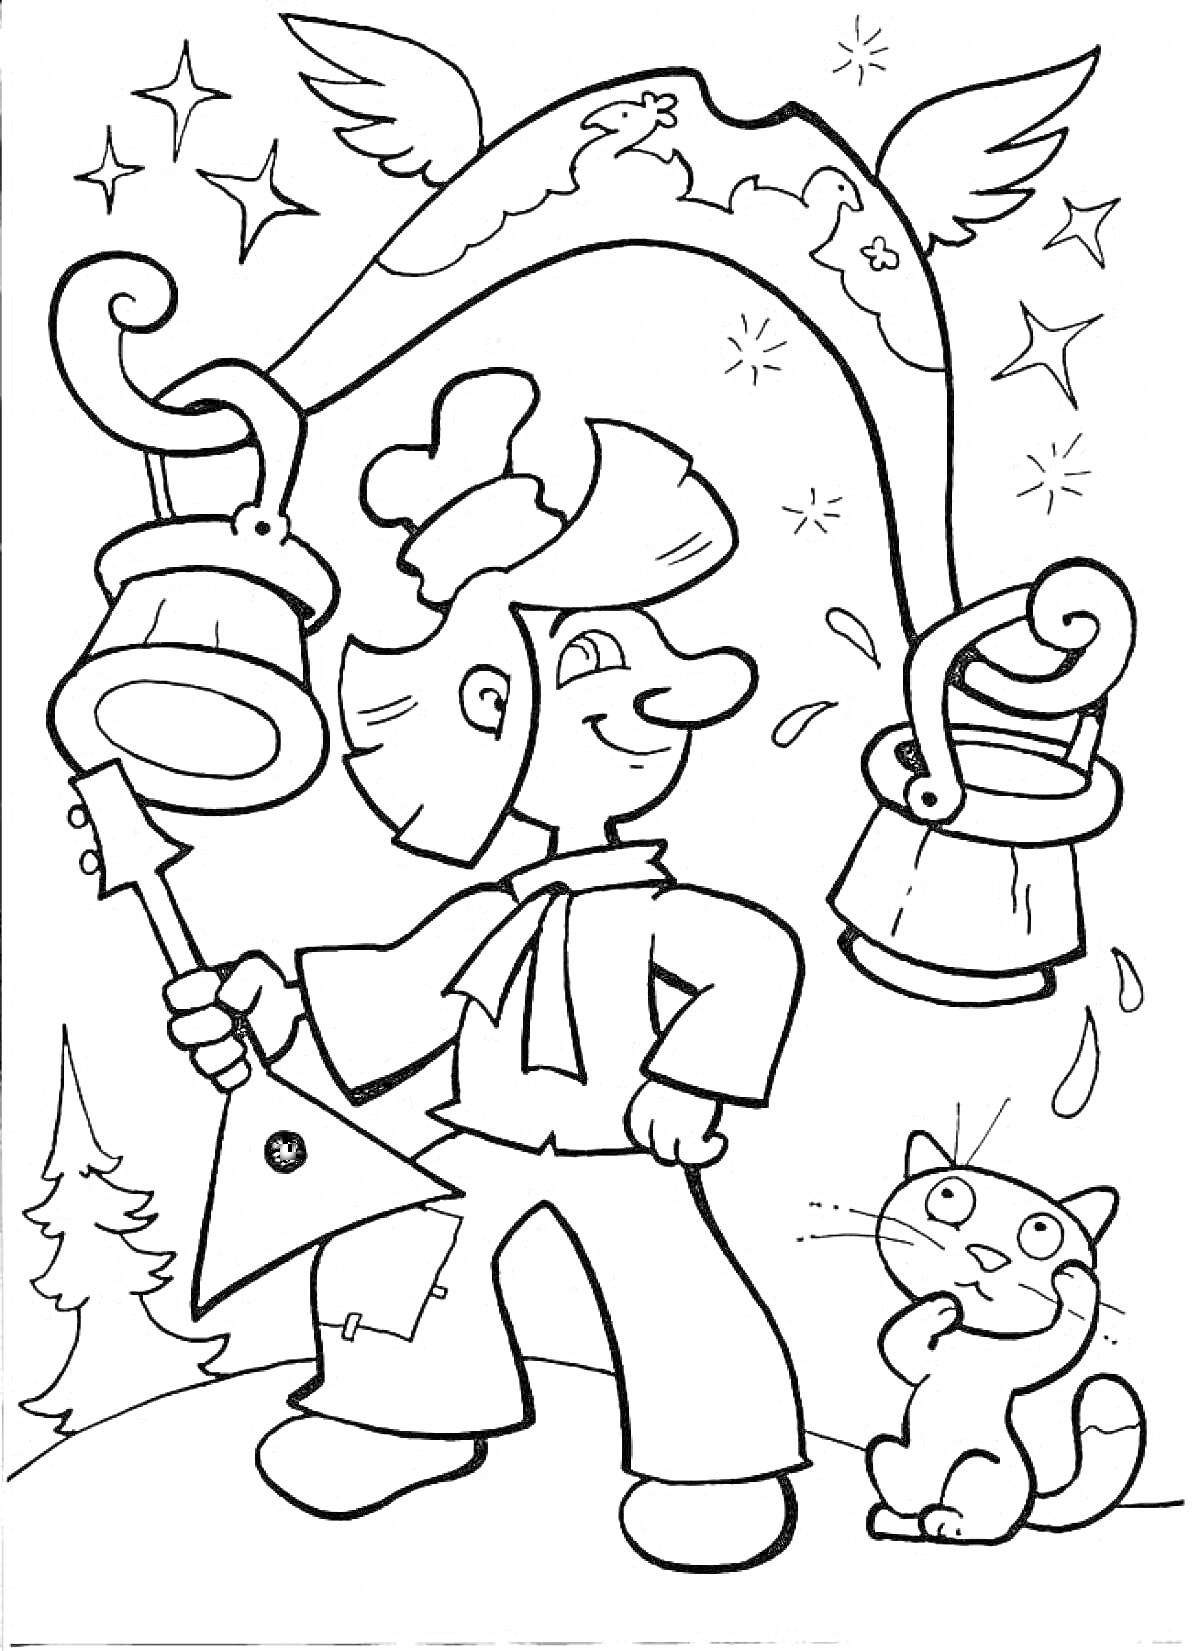 Раскраска Мужчина в шапке с балалайкой и ведрами воды на коромысле, с котом, деревьями и звездами на фоне